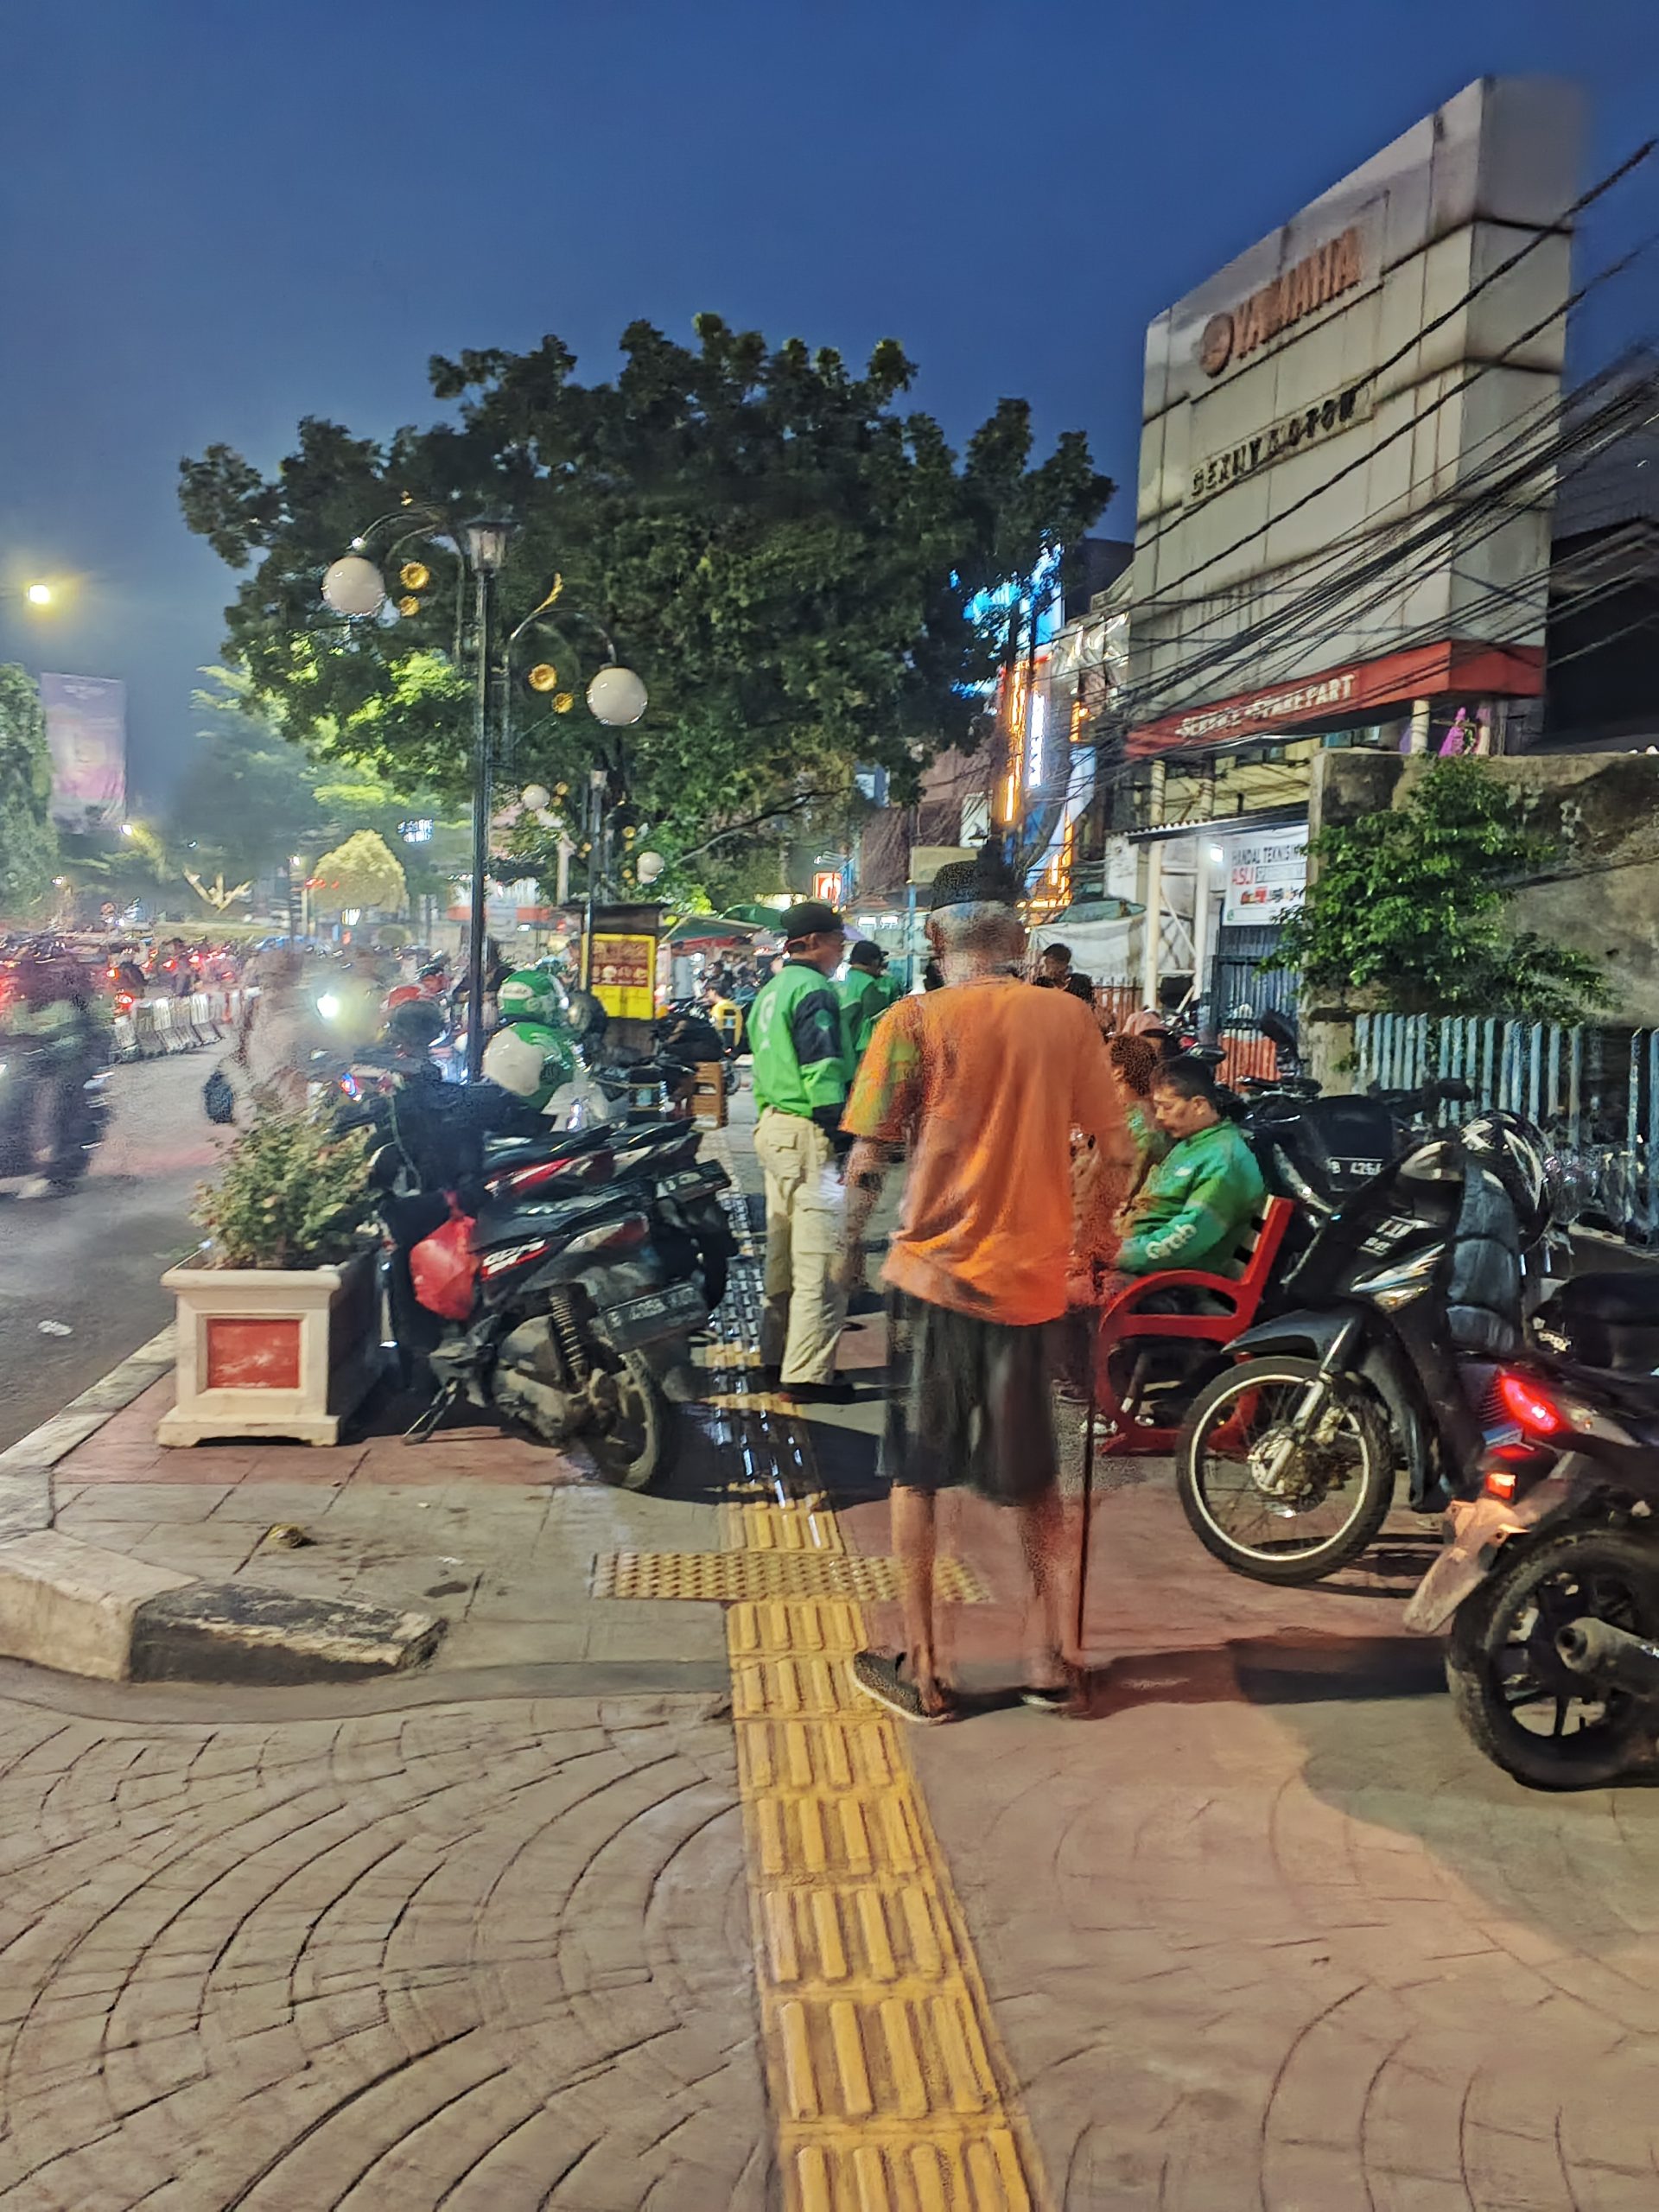 Seorang kakek berjalan kaki tertatih-tatih dengan tongkatnya di trotoar sementara jalannya dihalangi oleh motor-motor yang terparkir dan gerobak Pedagang Kaki Lima (PKL). Bagaimana perasaan anda jika mengetahui bahwa kakek tersebut adalah kakek kesayangan anda? | Foto: RED/Adrian Falah Diratama